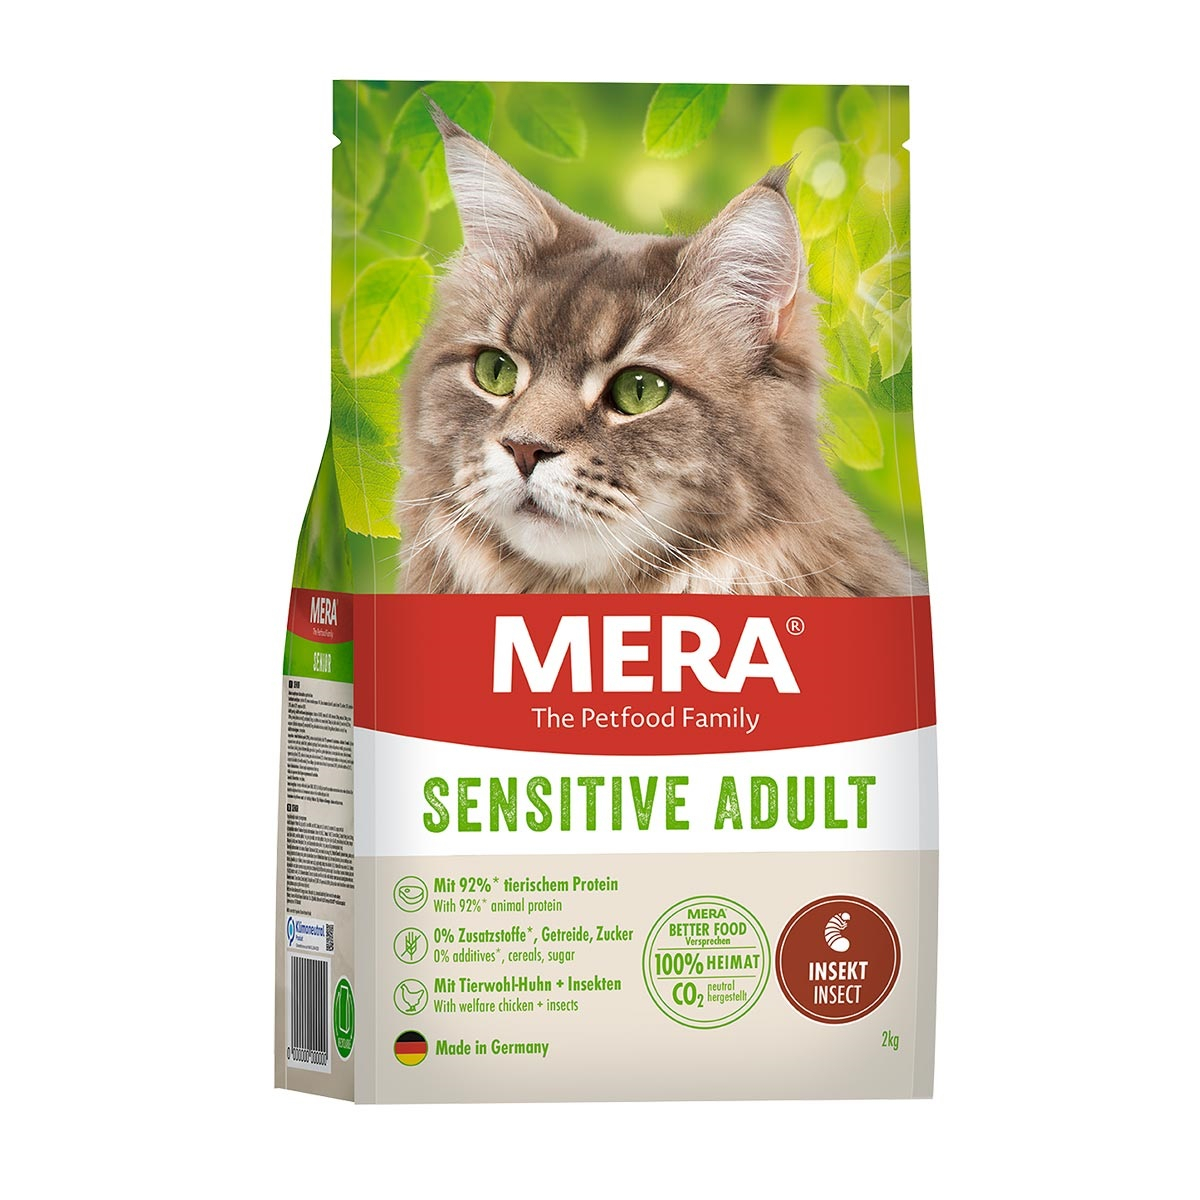 MERA Cat aux insectes pour chat adulte sensible